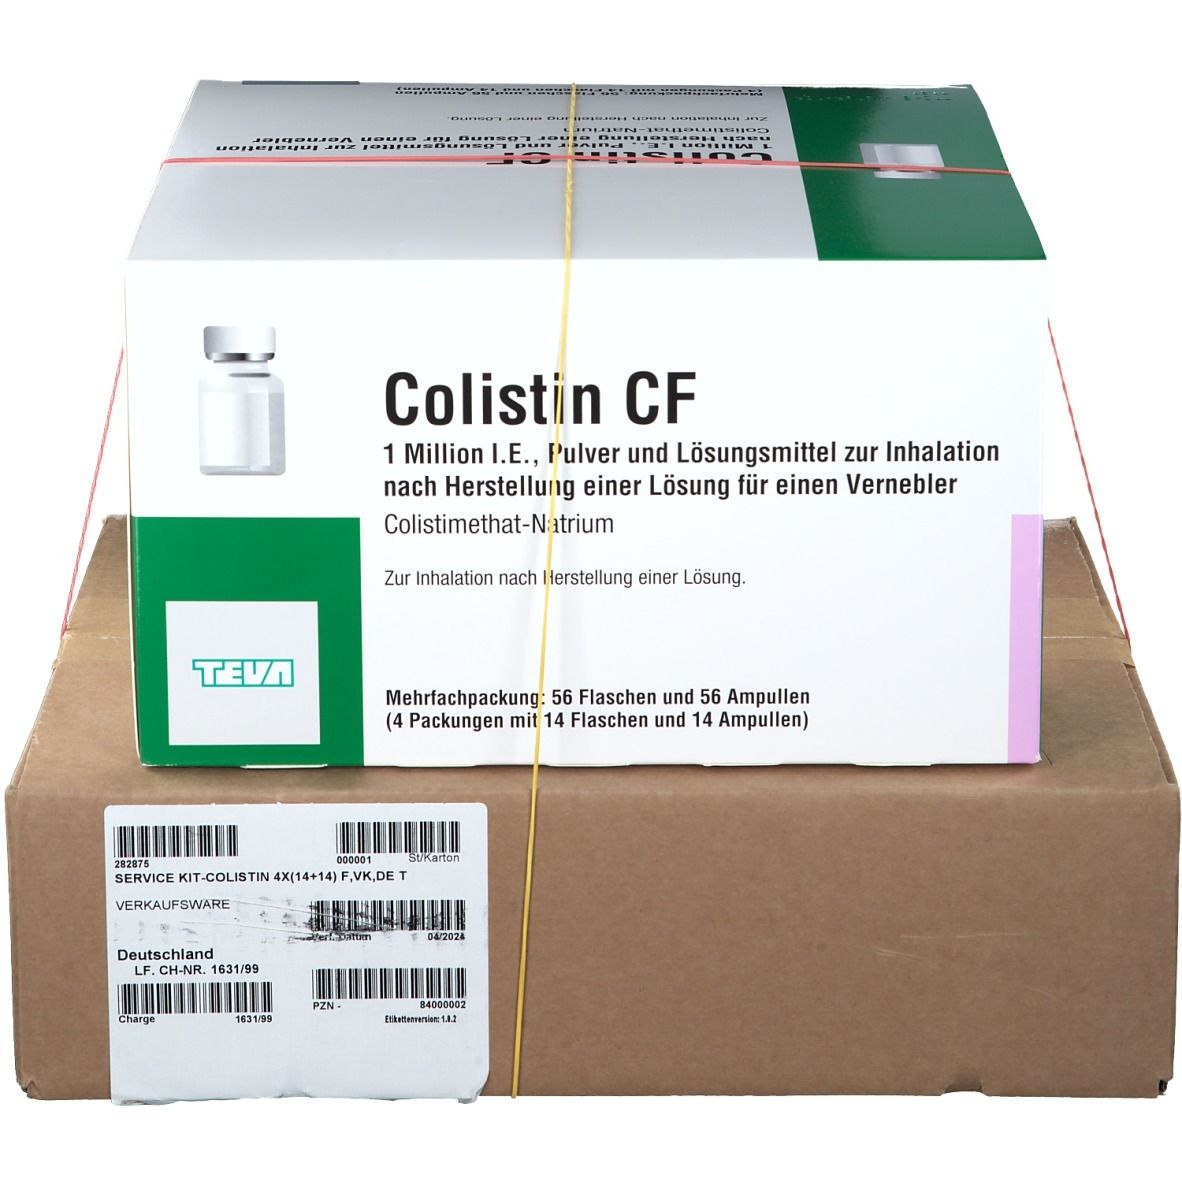 Colistin CF 1 Million I.E.